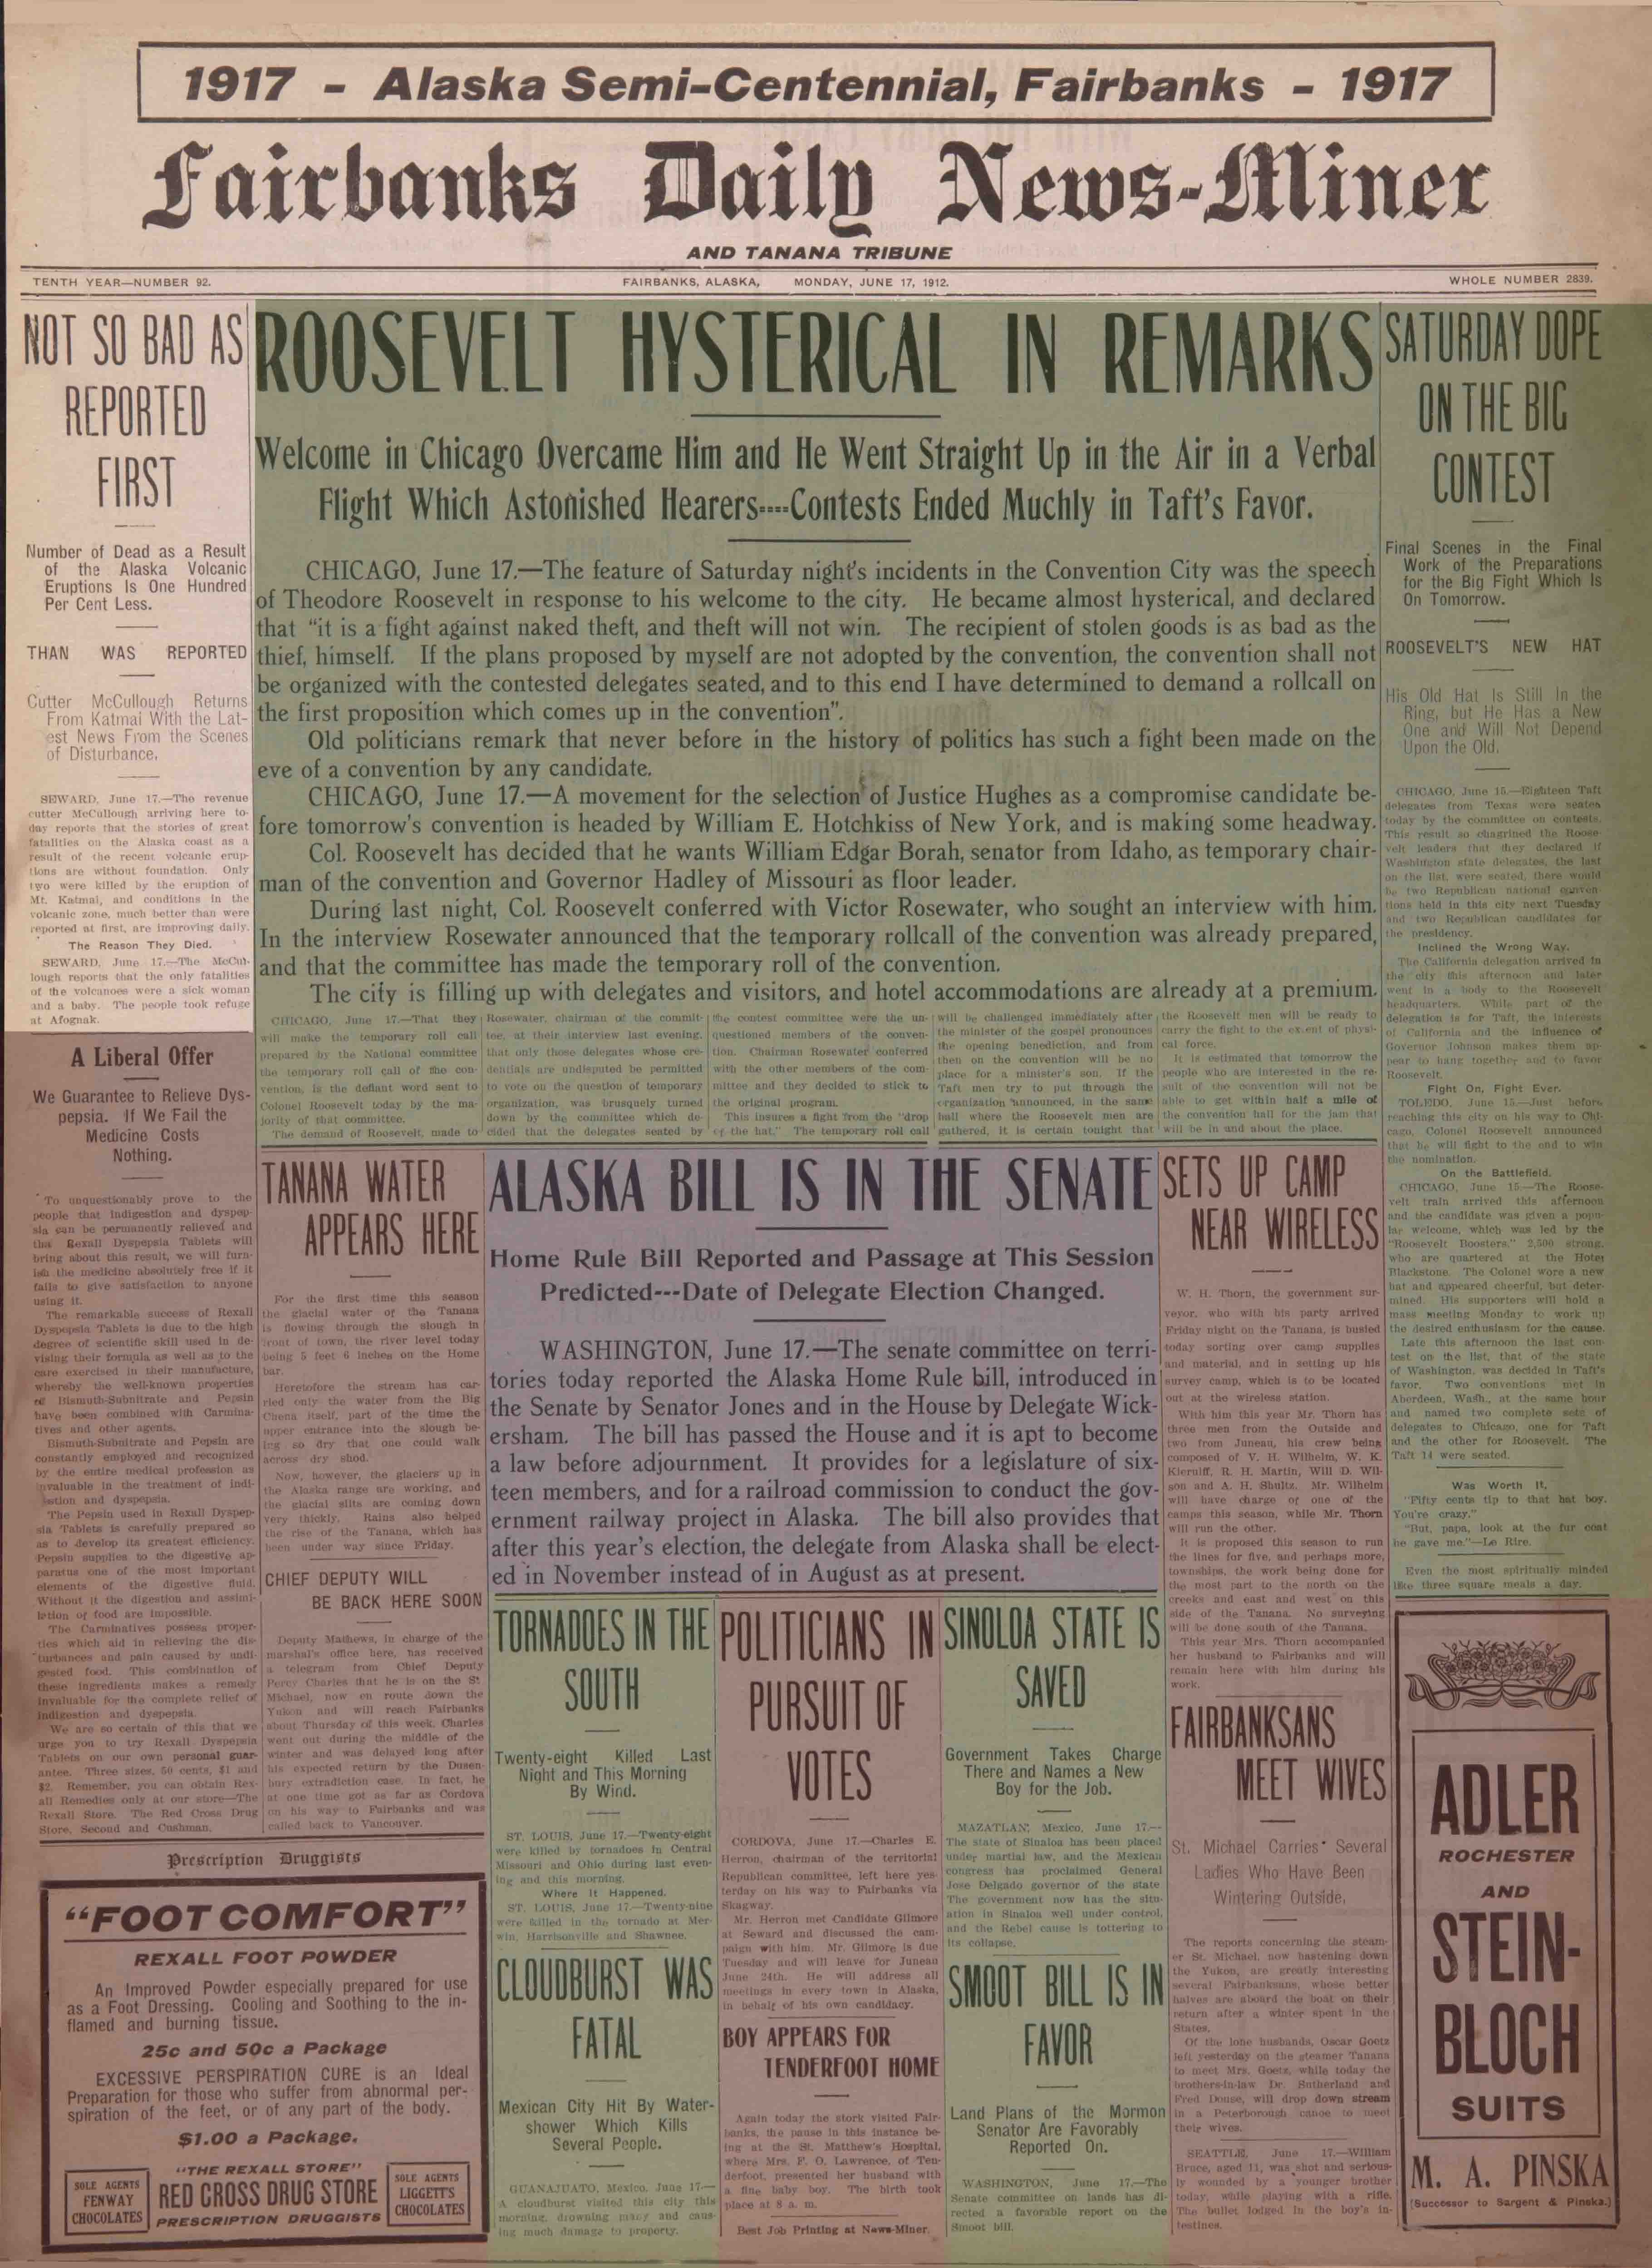 1912 June 17, Fairbanks Daily News-Miner (pg 1)